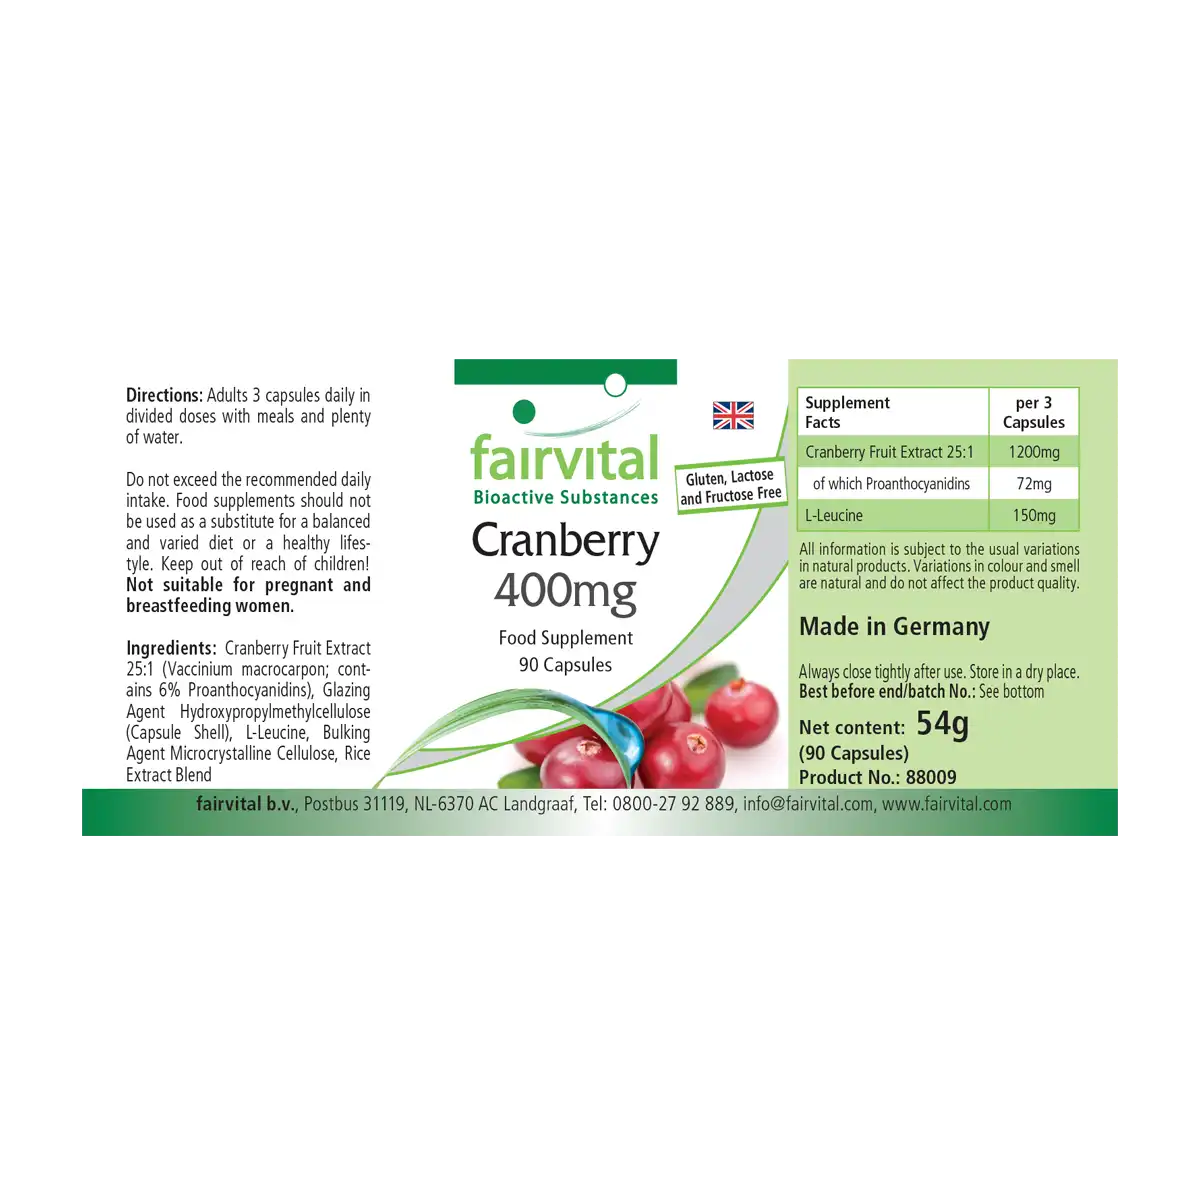 Mirtillo Rosso 400 mg - 90 Capsule